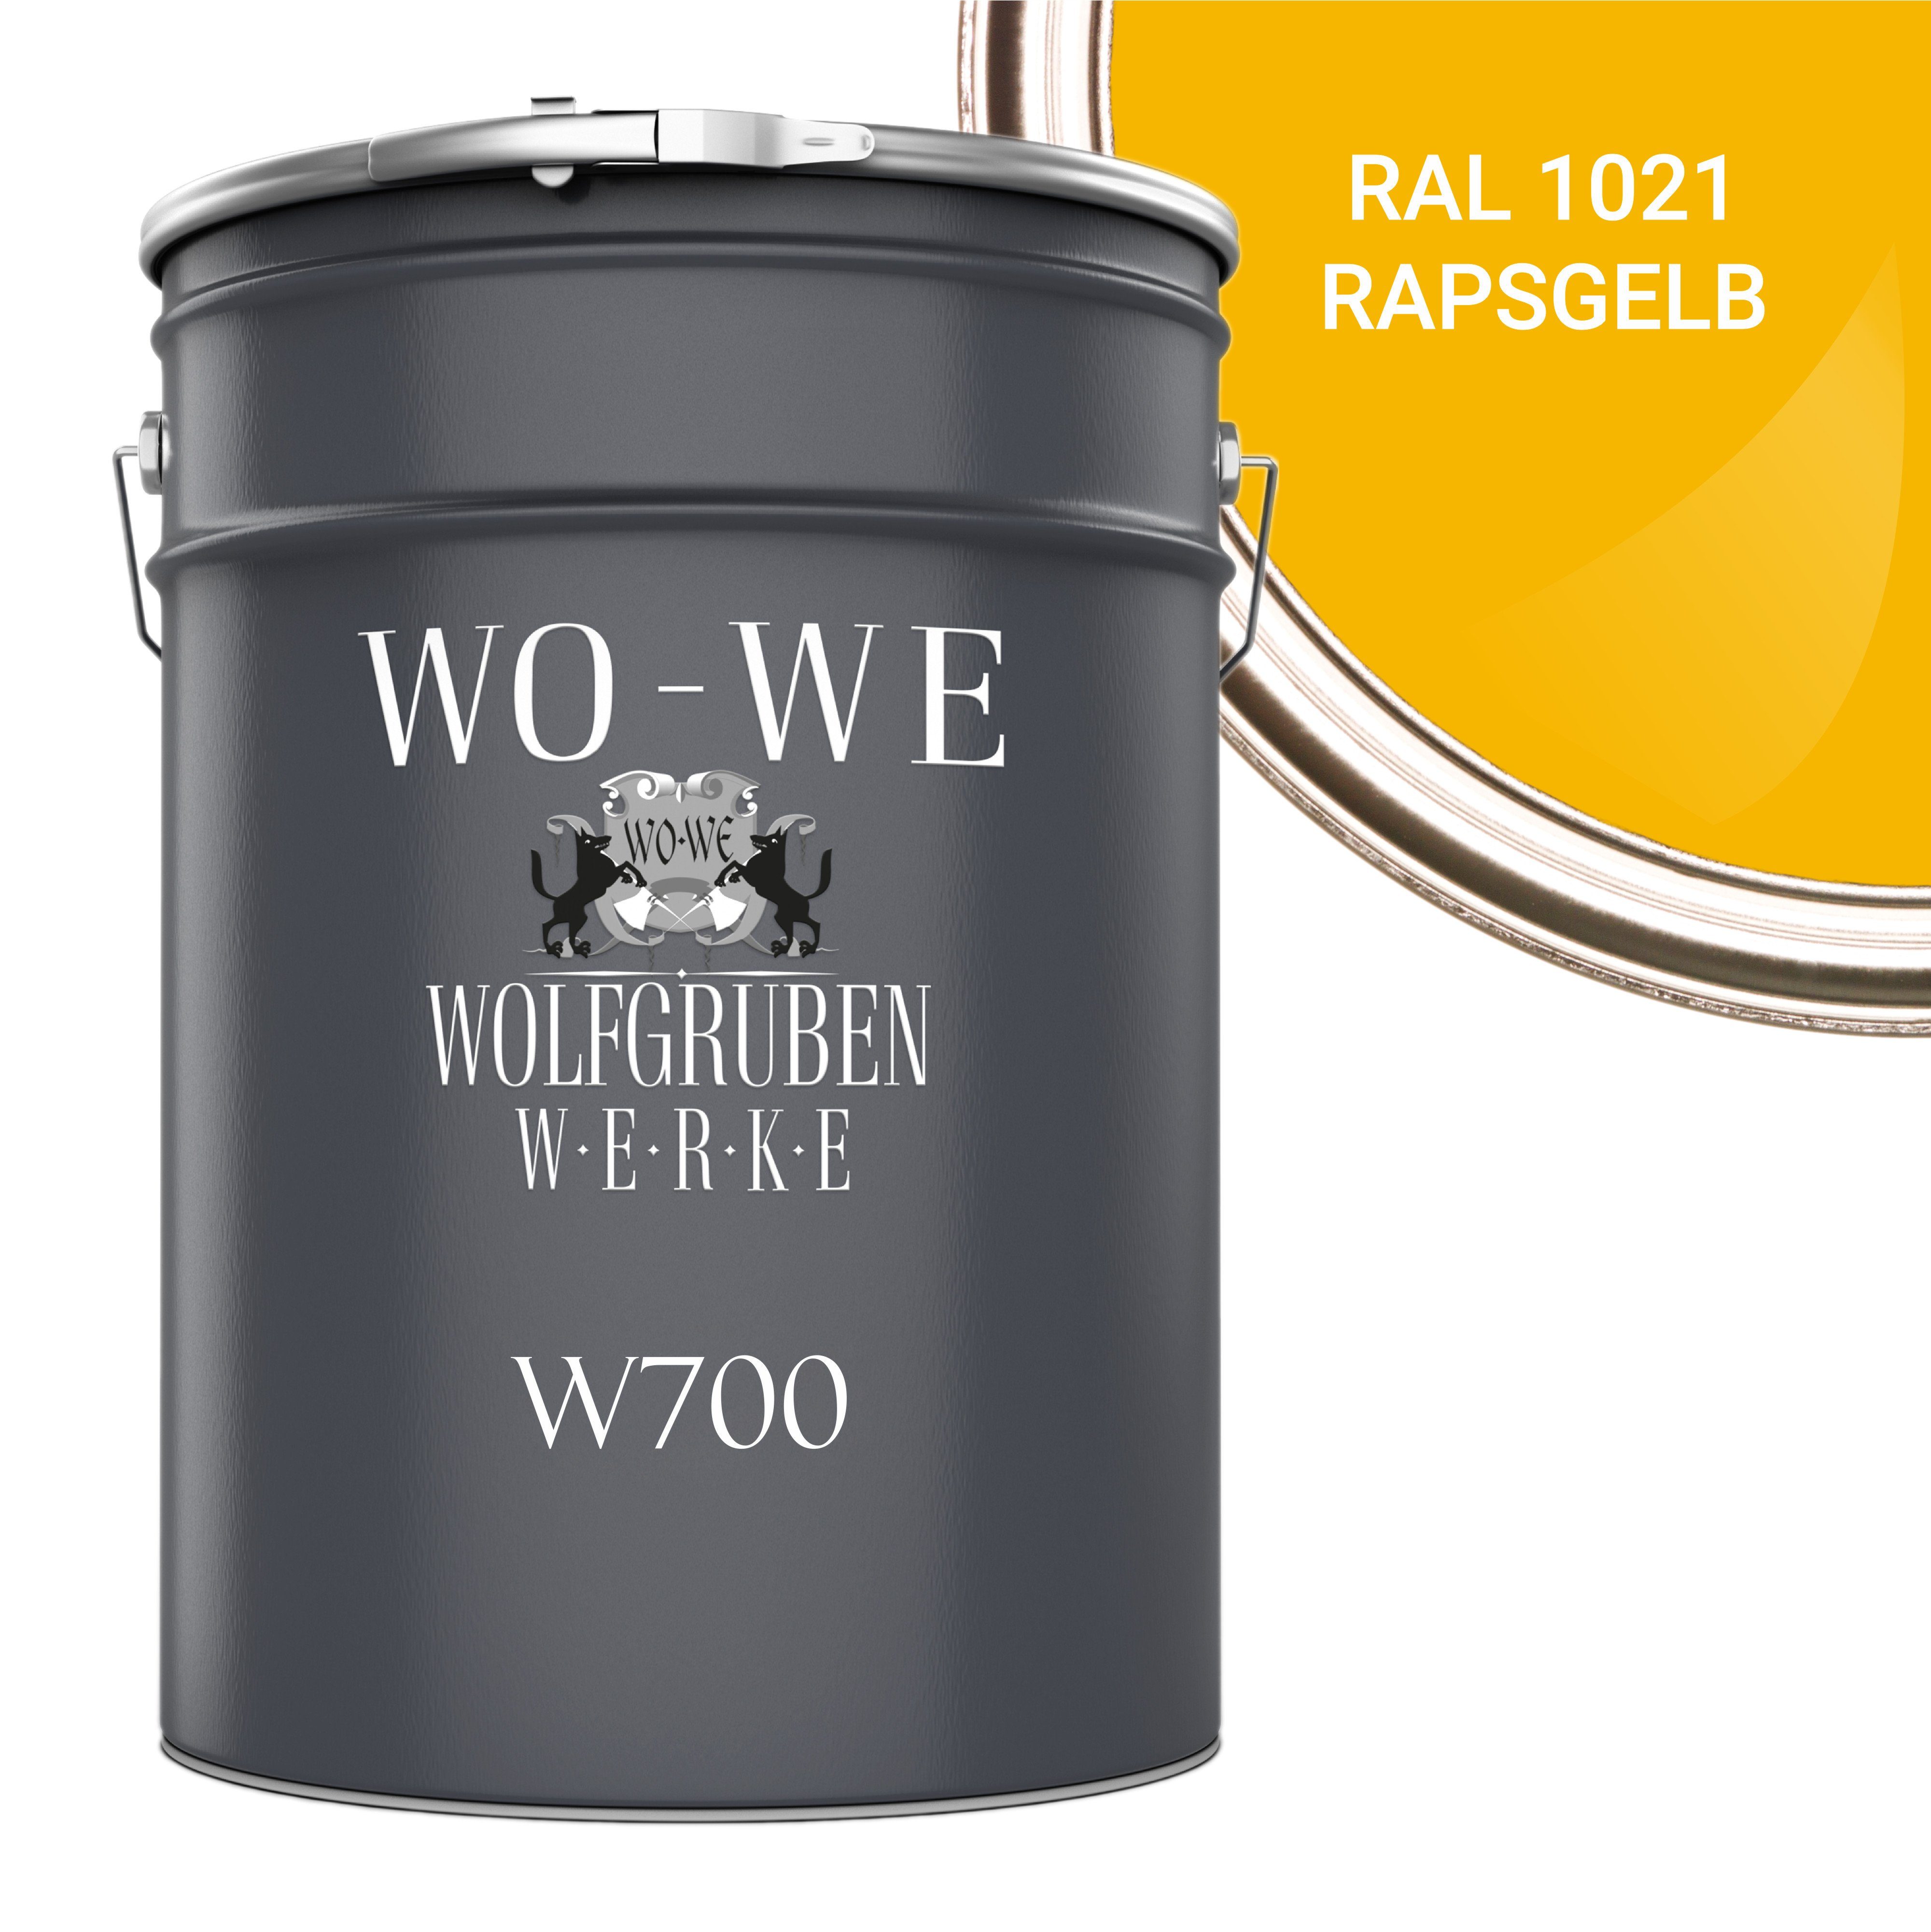 WO-WE Bodenversiegelung Betonfarbe Bodenfarbe Bodenbeschichtung W700, 1-10L, Seidenglänzend